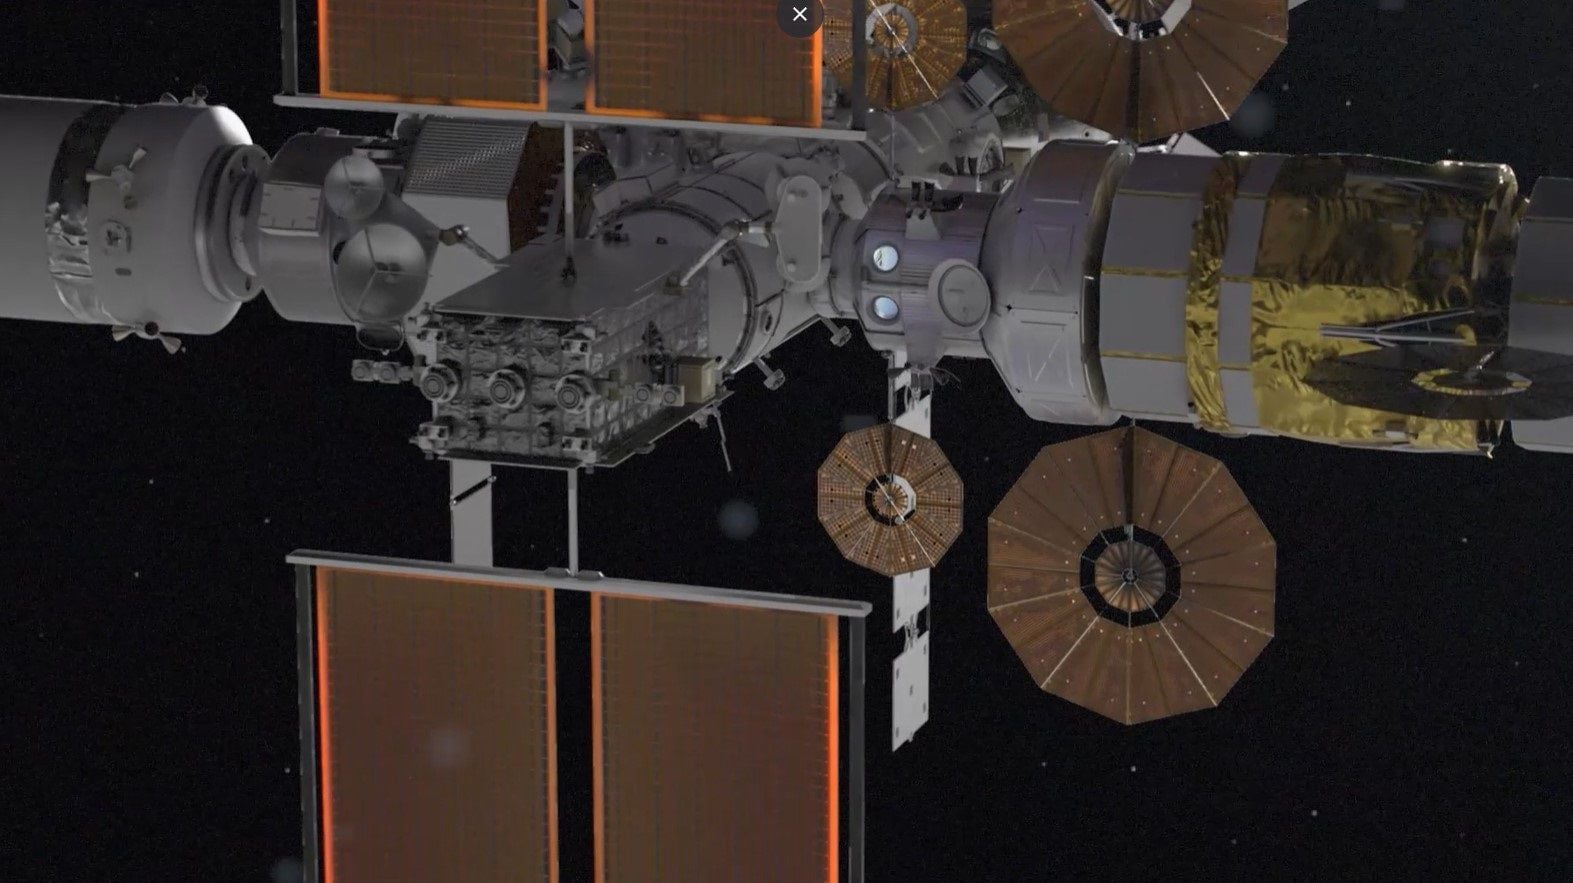 La NASA lanzó una animación 3D de Gateway, la estación espacial lunar que permitirá misiones científicas y de exploración en el espacio profundo a partir de 2028.